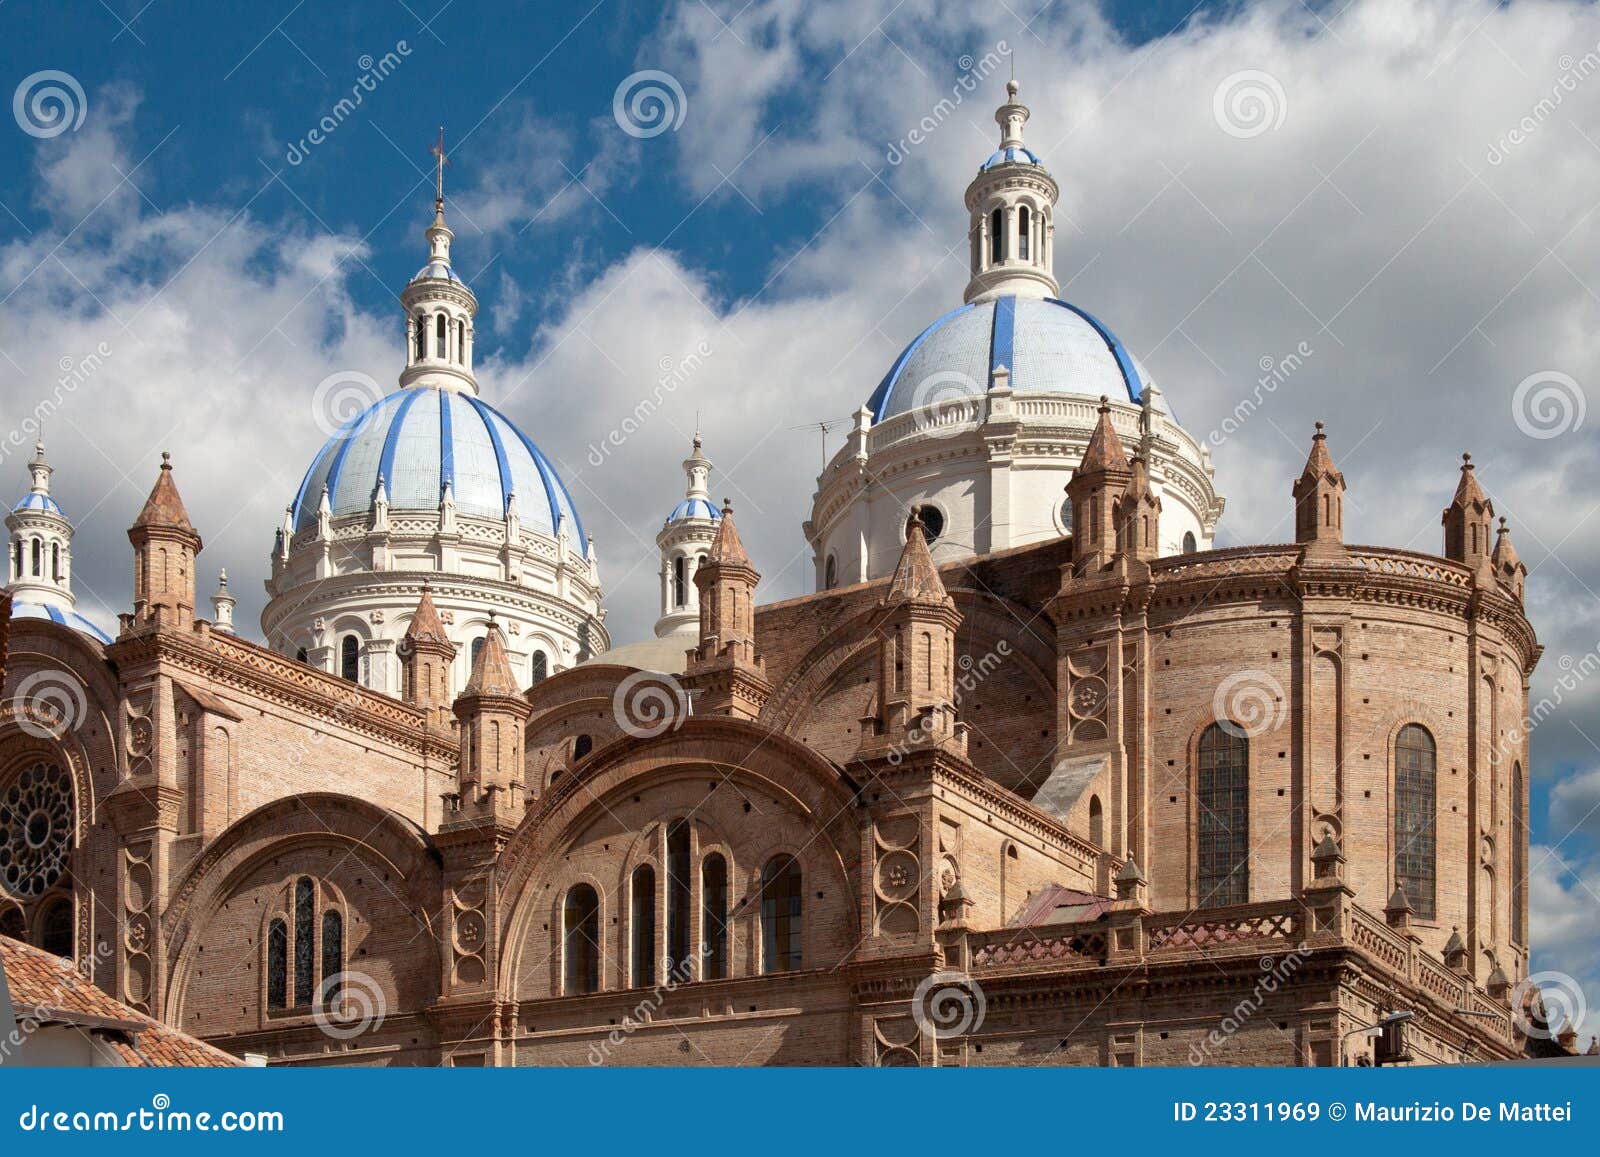 cathedral of cuenca, ecuador